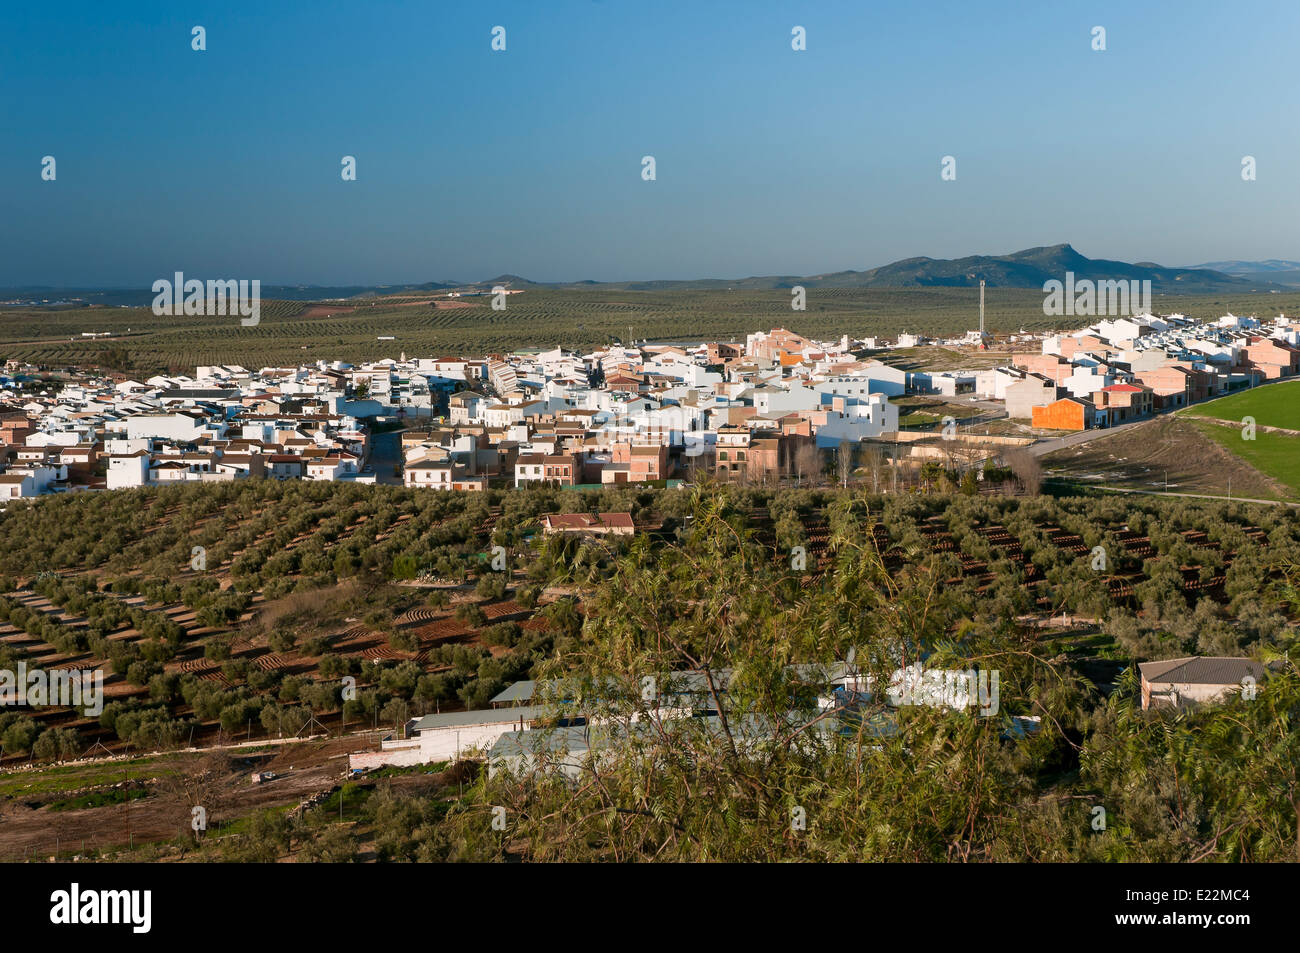 Vue panoramique sur la ville, sur la route touristique des bandits, casariche, province de Séville, Andalousie, Espagne, Europe Banque D'Images